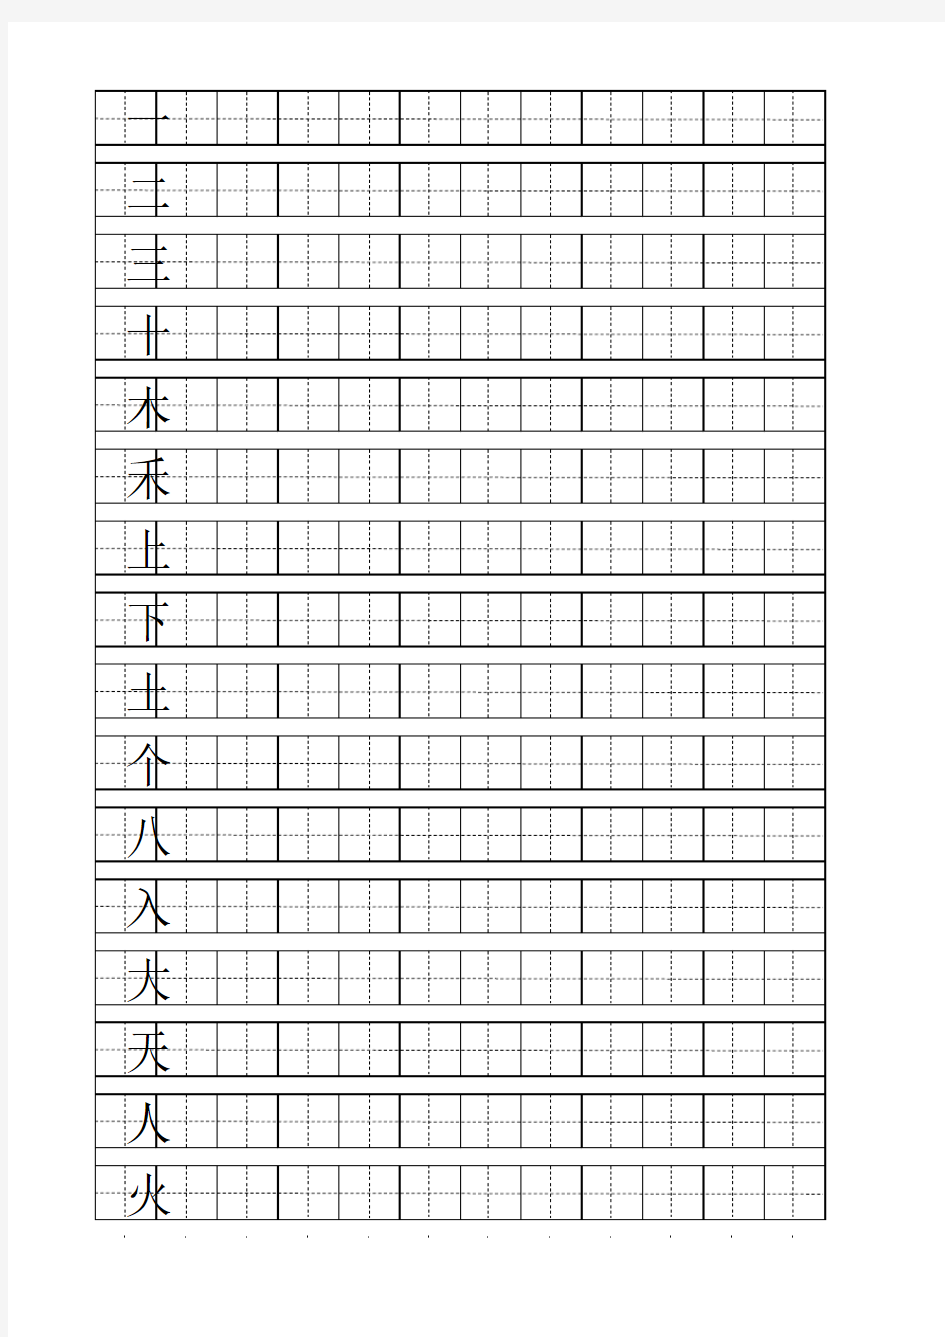 一年级上学期会写汉字100个(用A4纸打印出的田字格)